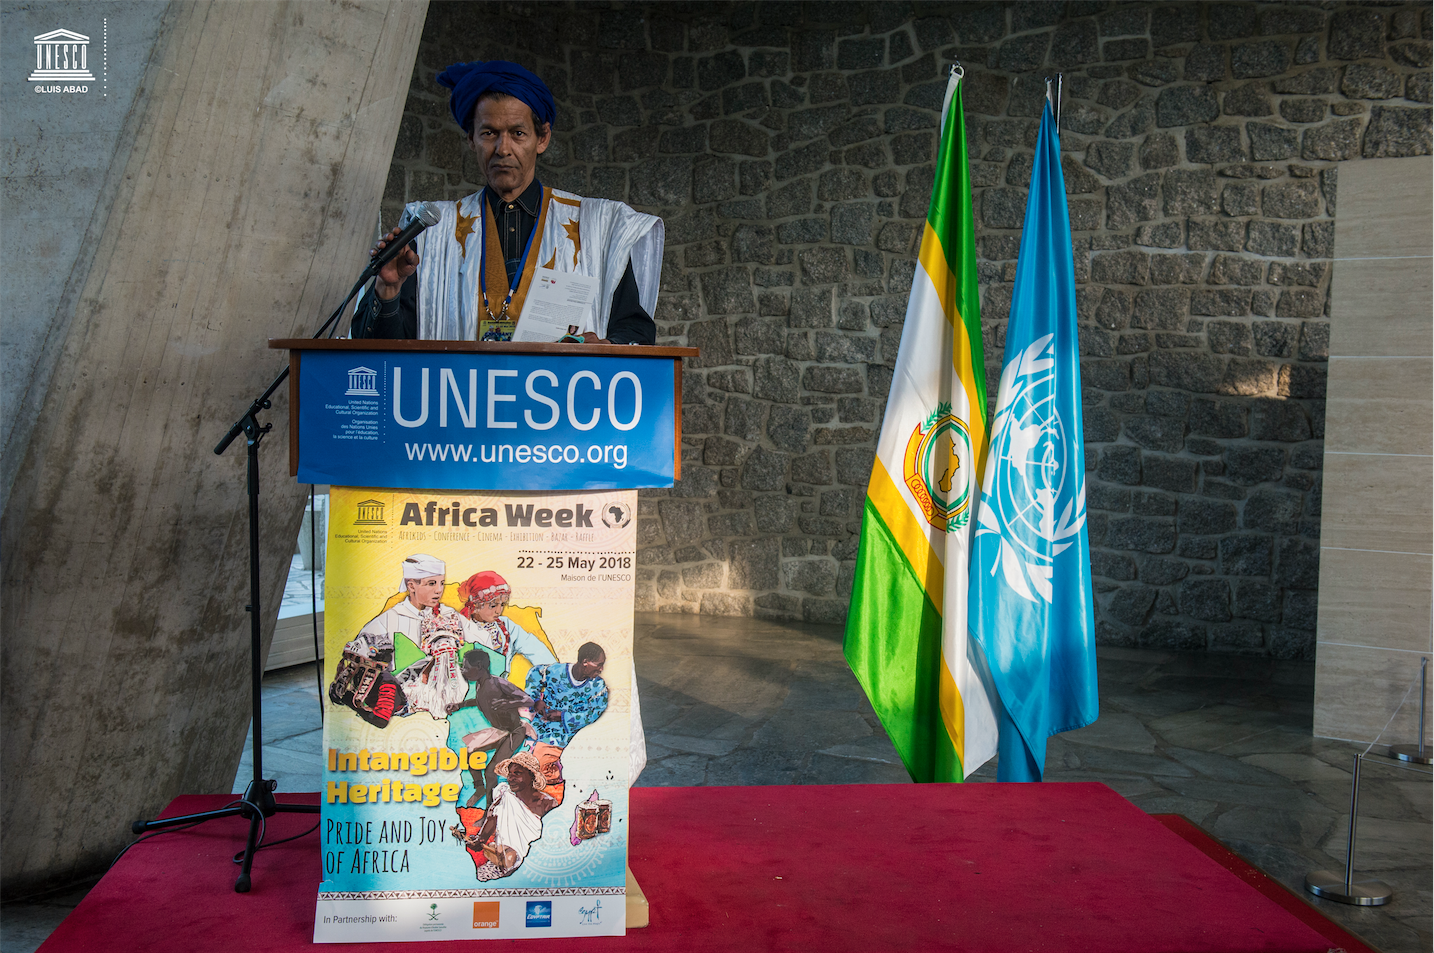 Africa Week 2018 Unesco : l'ambassadeur mauritanien intervient pour décrocher l'ancien drapeau exposé par un artiste mauritanien